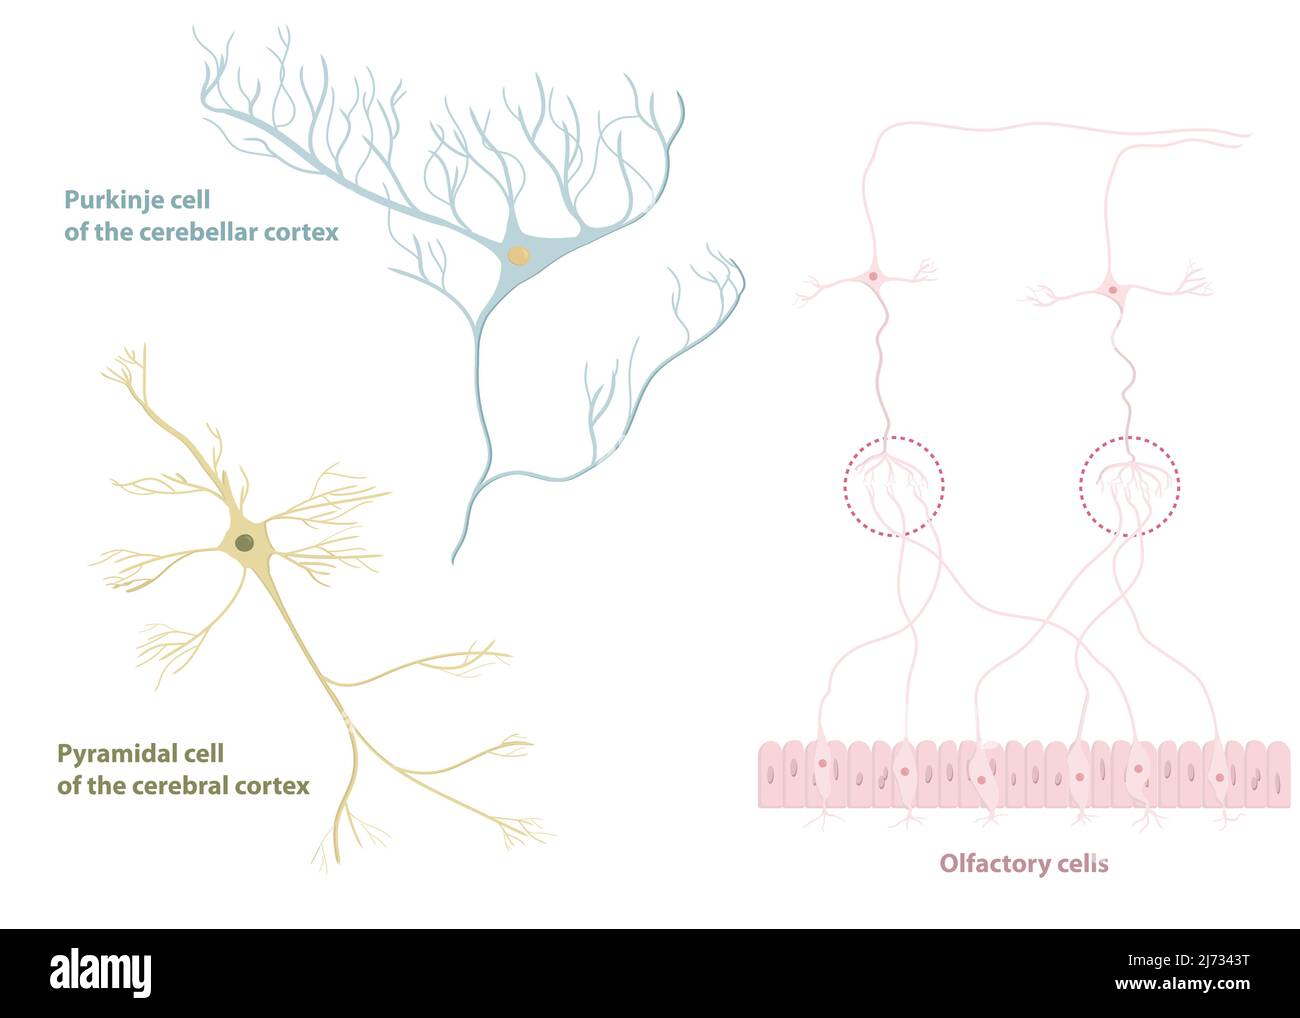 Arten von Neuronen: Pyramidenzellen aus der Großhirnrinde, Purkinje-Zellen aus der Großhirnrinde, olfaktorische Zellen aus dem olfaktorischen Epithel Stock Vektor